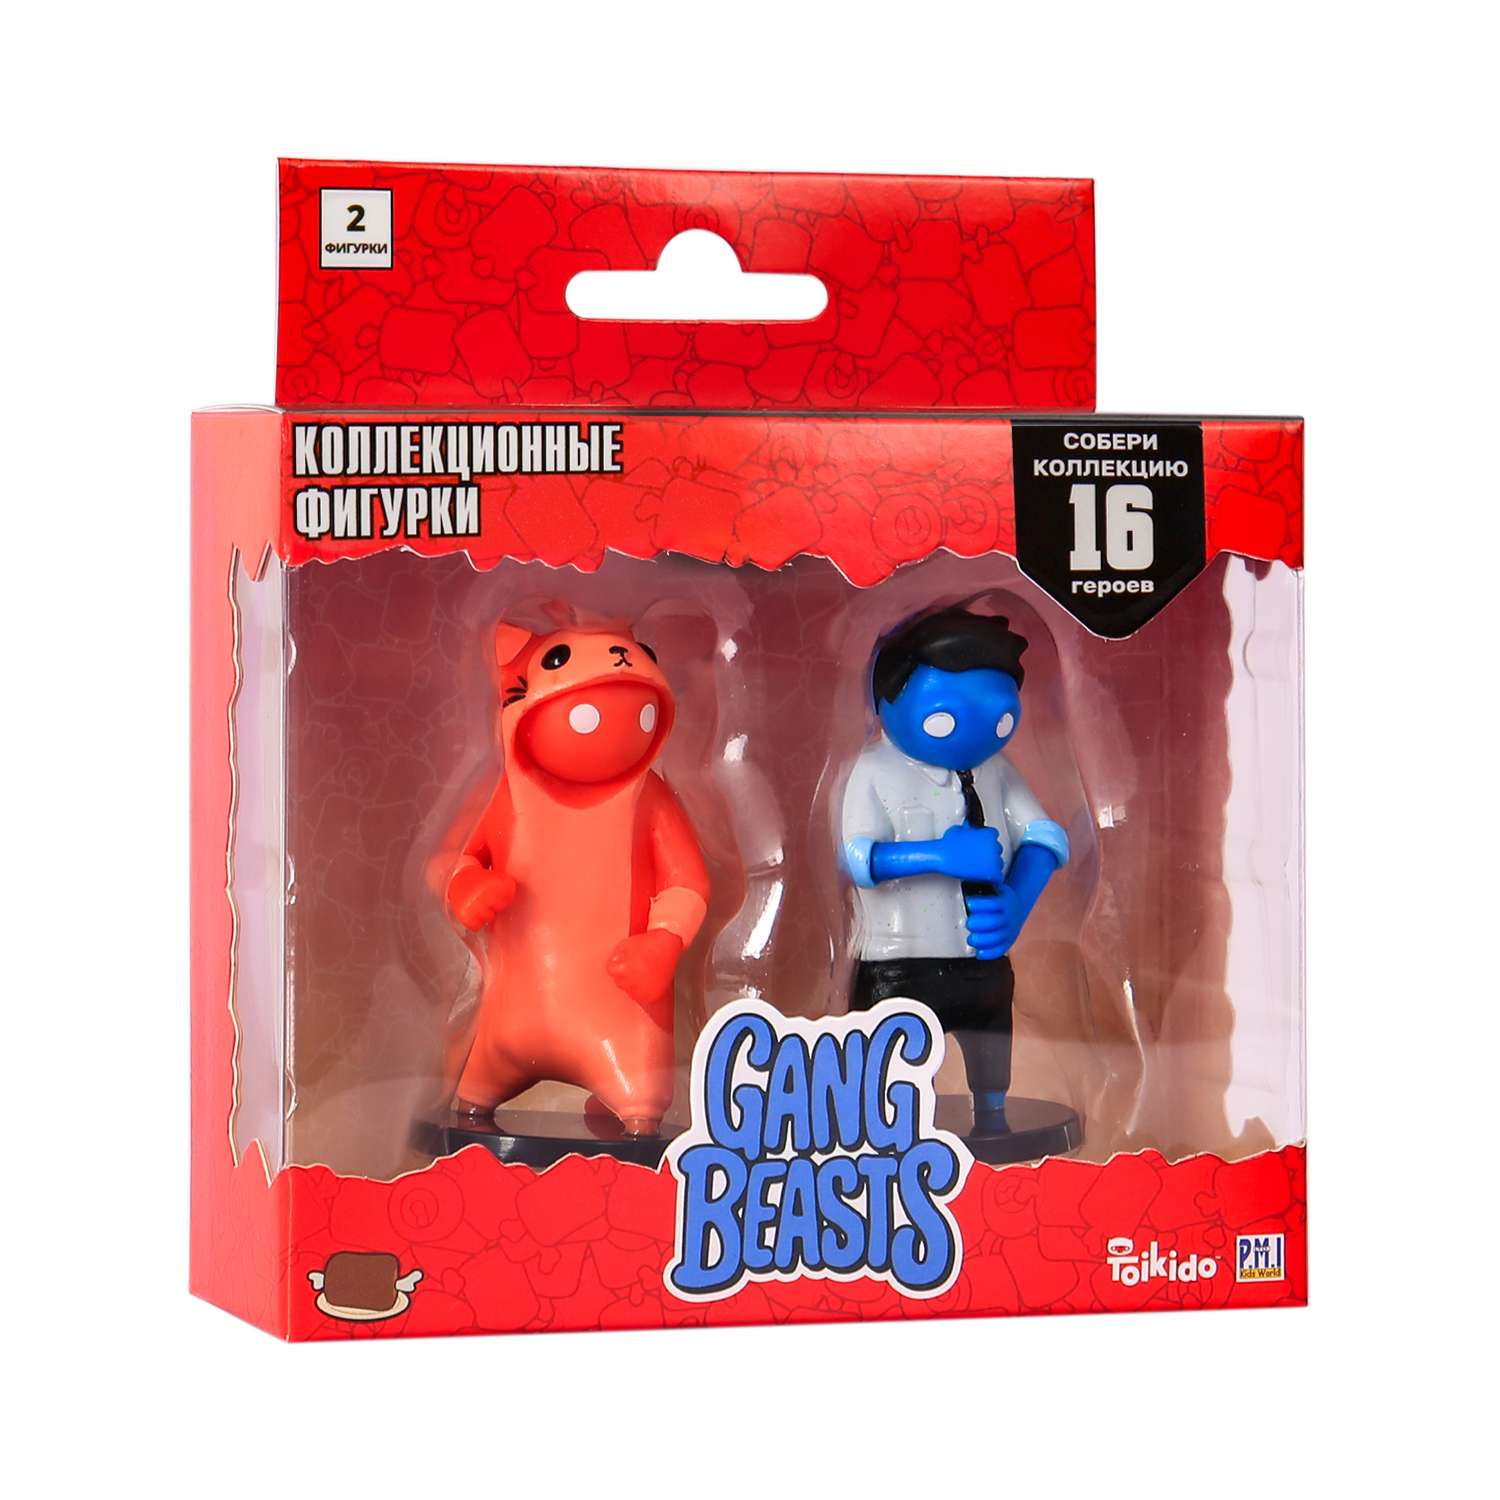 Набор игровой PMI Gang Beasts фигурка 2 шт.Красный и Синий GB2015-B - фото 3